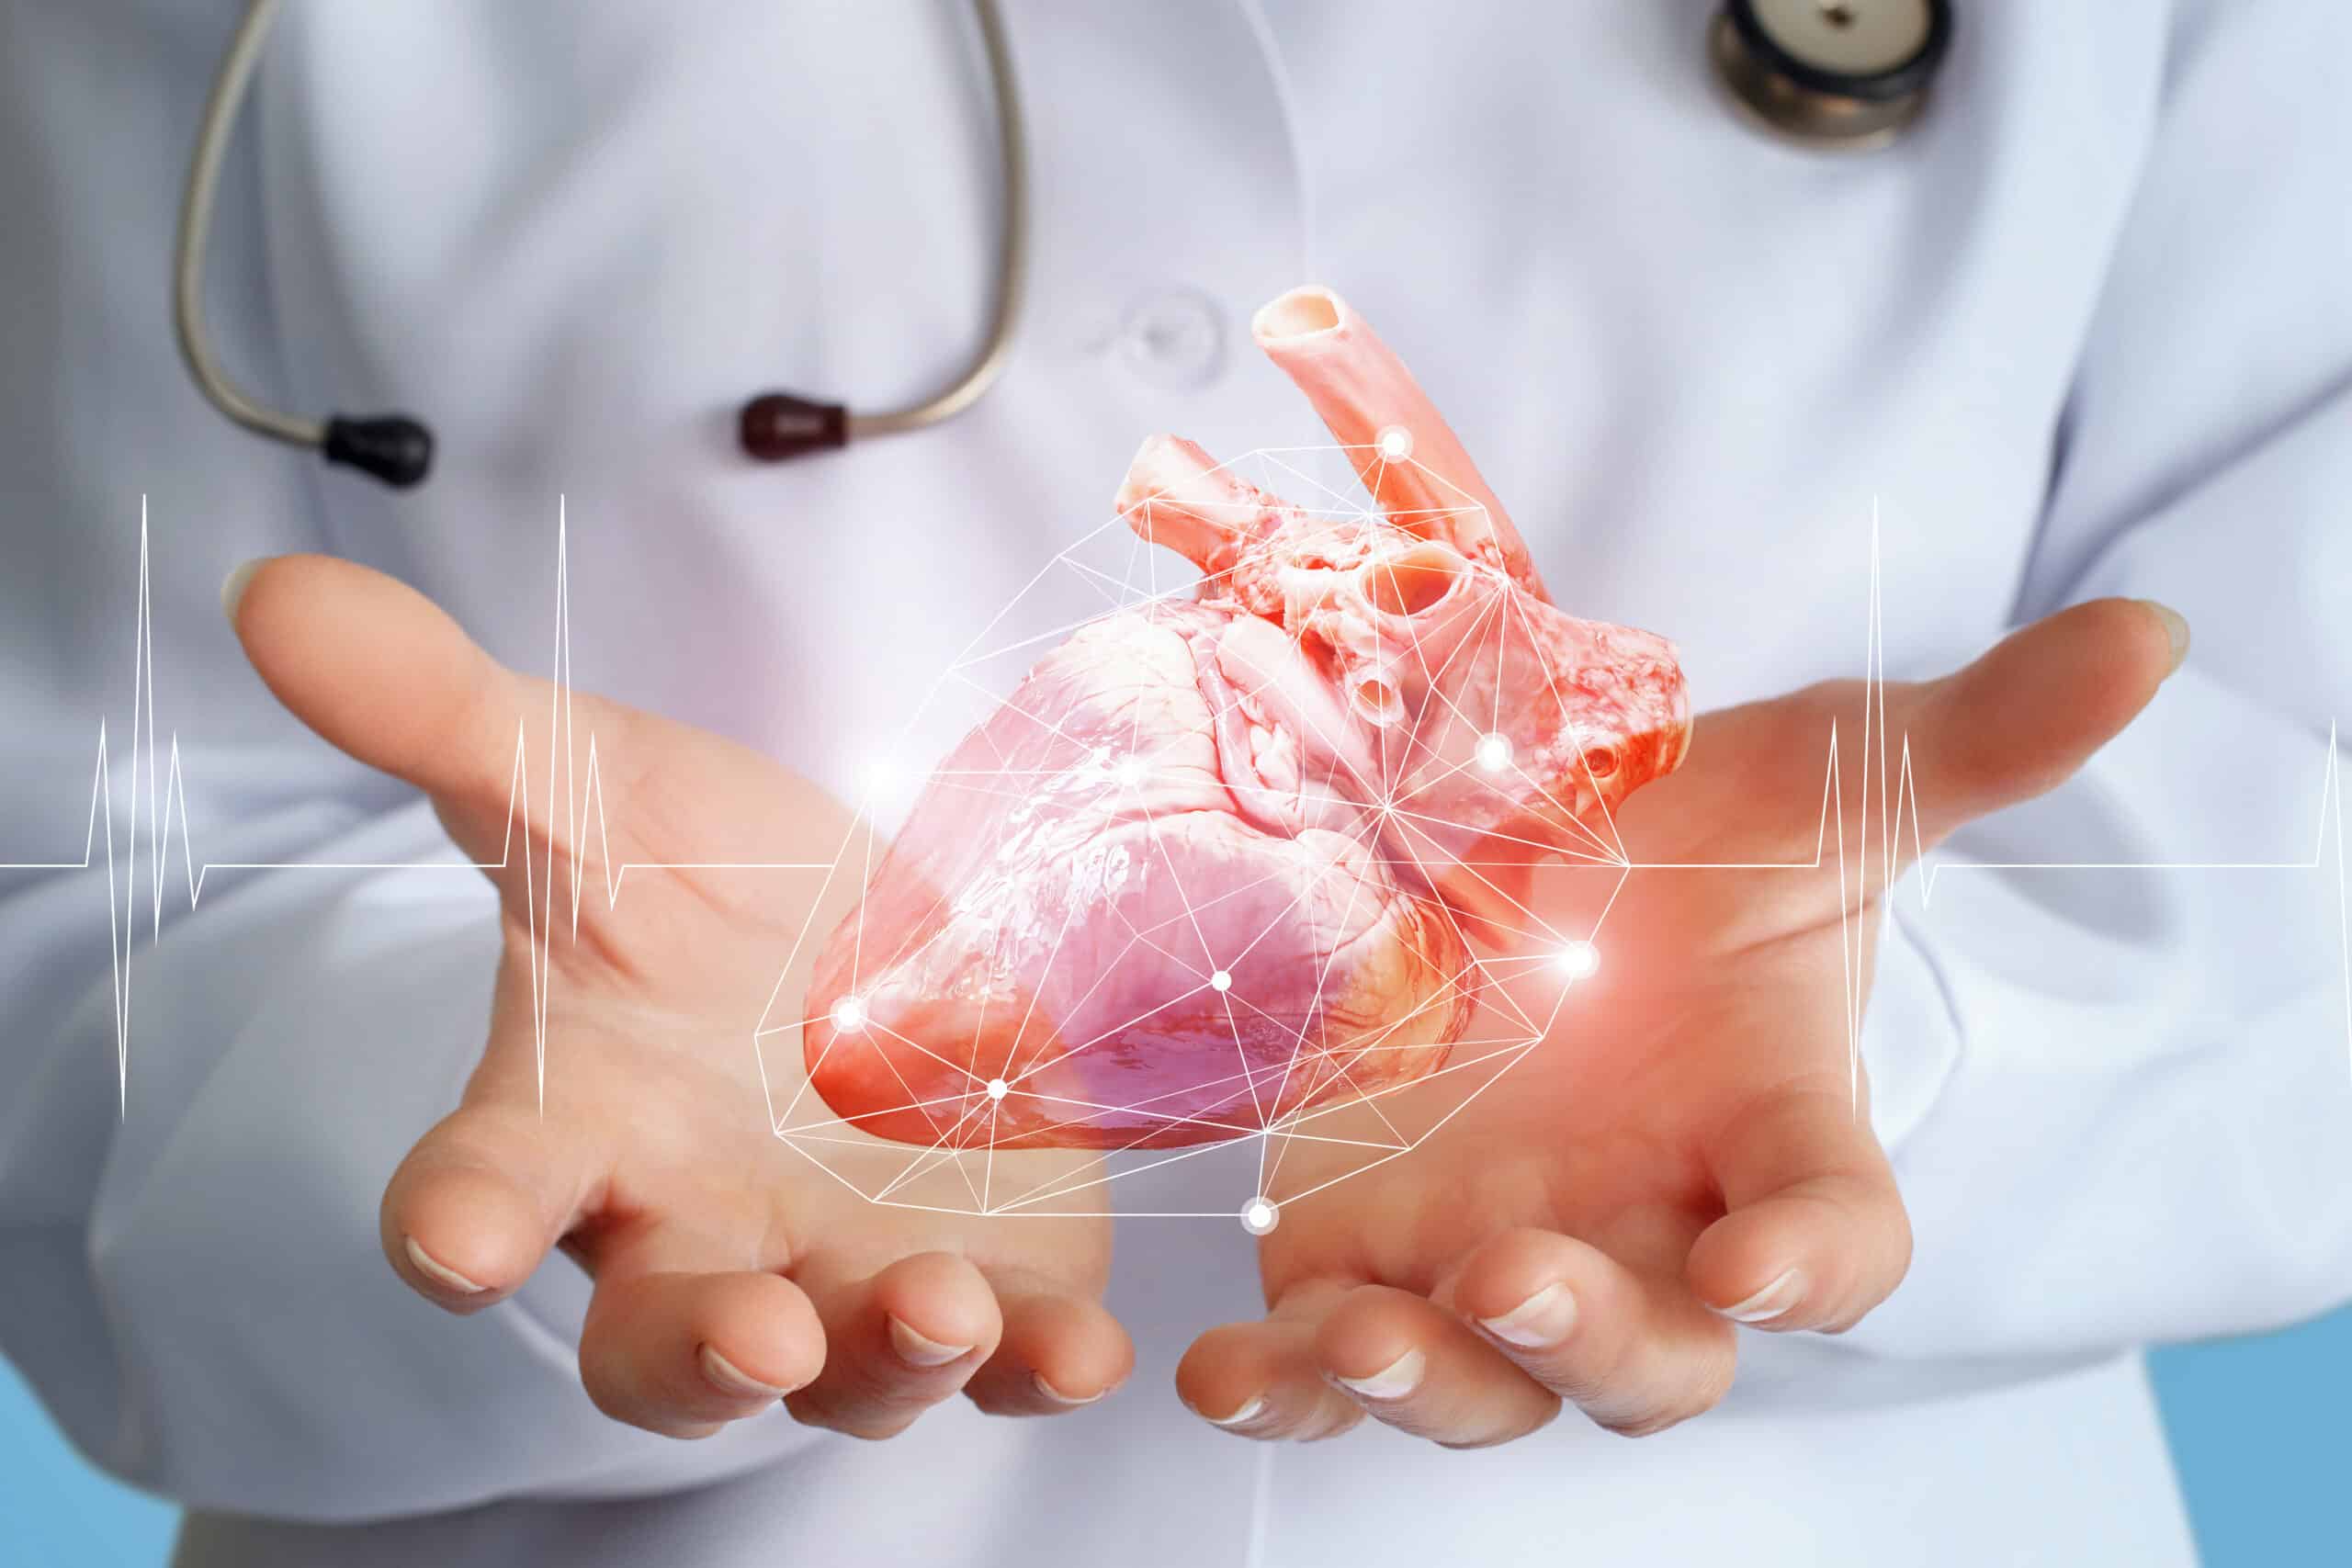 Médico cardiologista mostra um coração nas mãos.